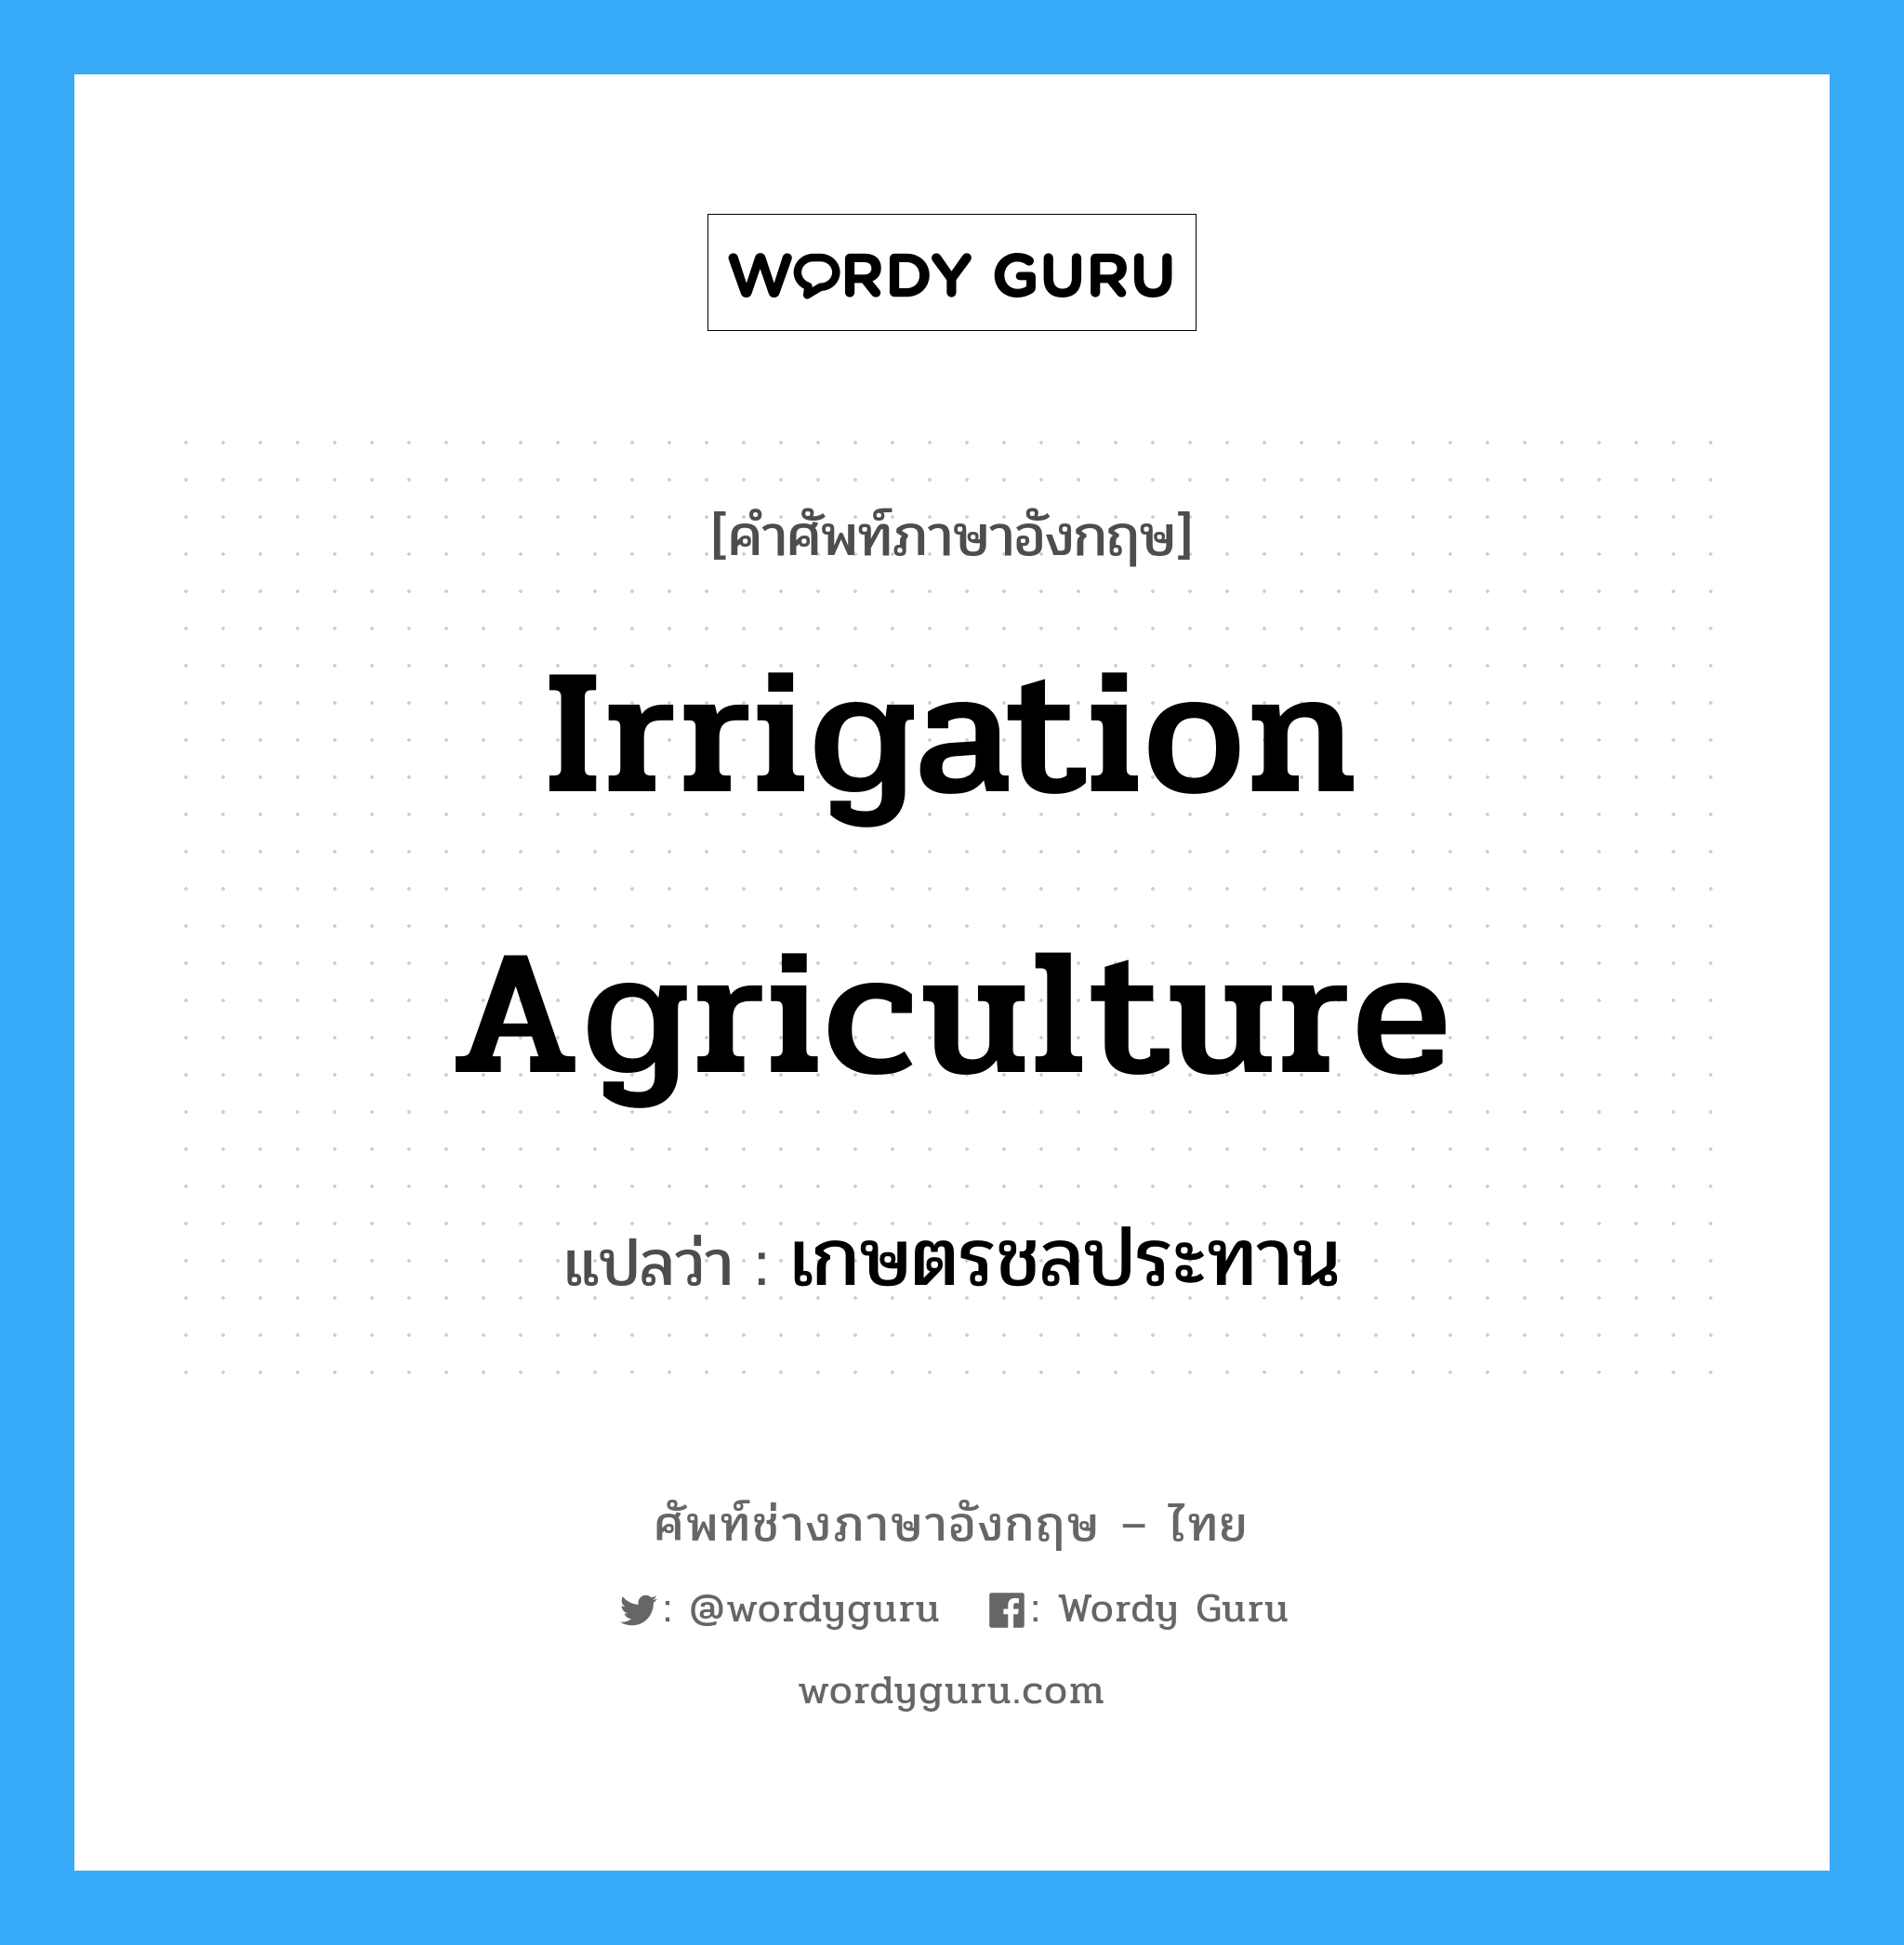 เกษตรชลประทาน ภาษาอังกฤษ?, คำศัพท์ช่างภาษาอังกฤษ - ไทย เกษตรชลประทาน คำศัพท์ภาษาอังกฤษ เกษตรชลประทาน แปลว่า irrigation agriculture